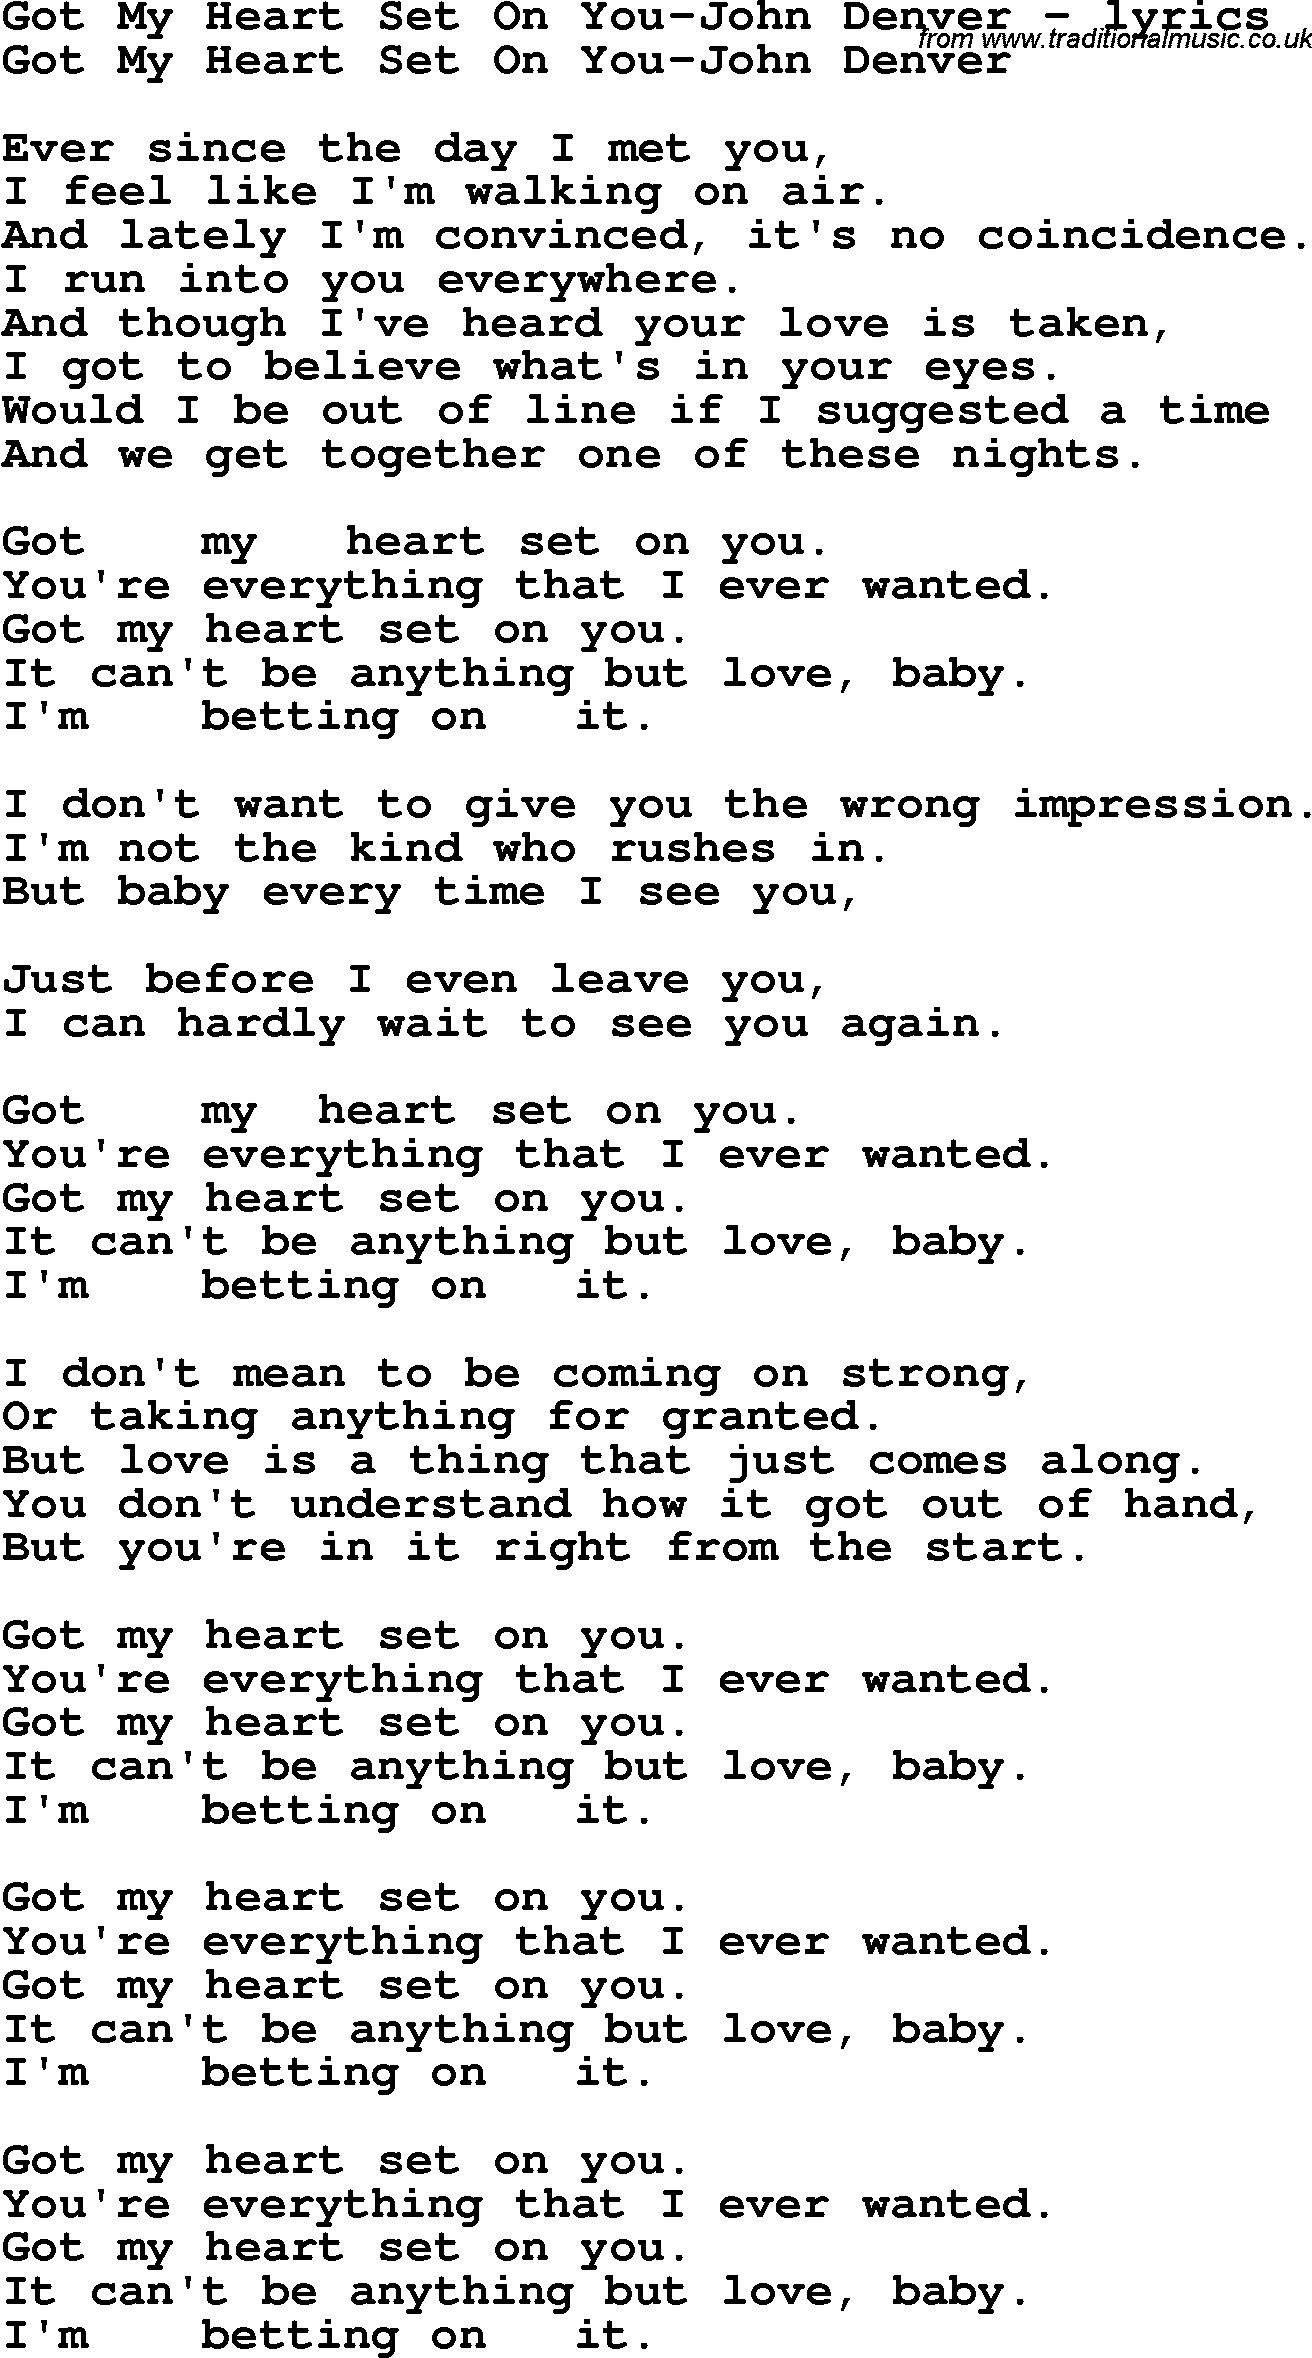 Love Song Lyrics for: Got My Heart Set On You-John Denver